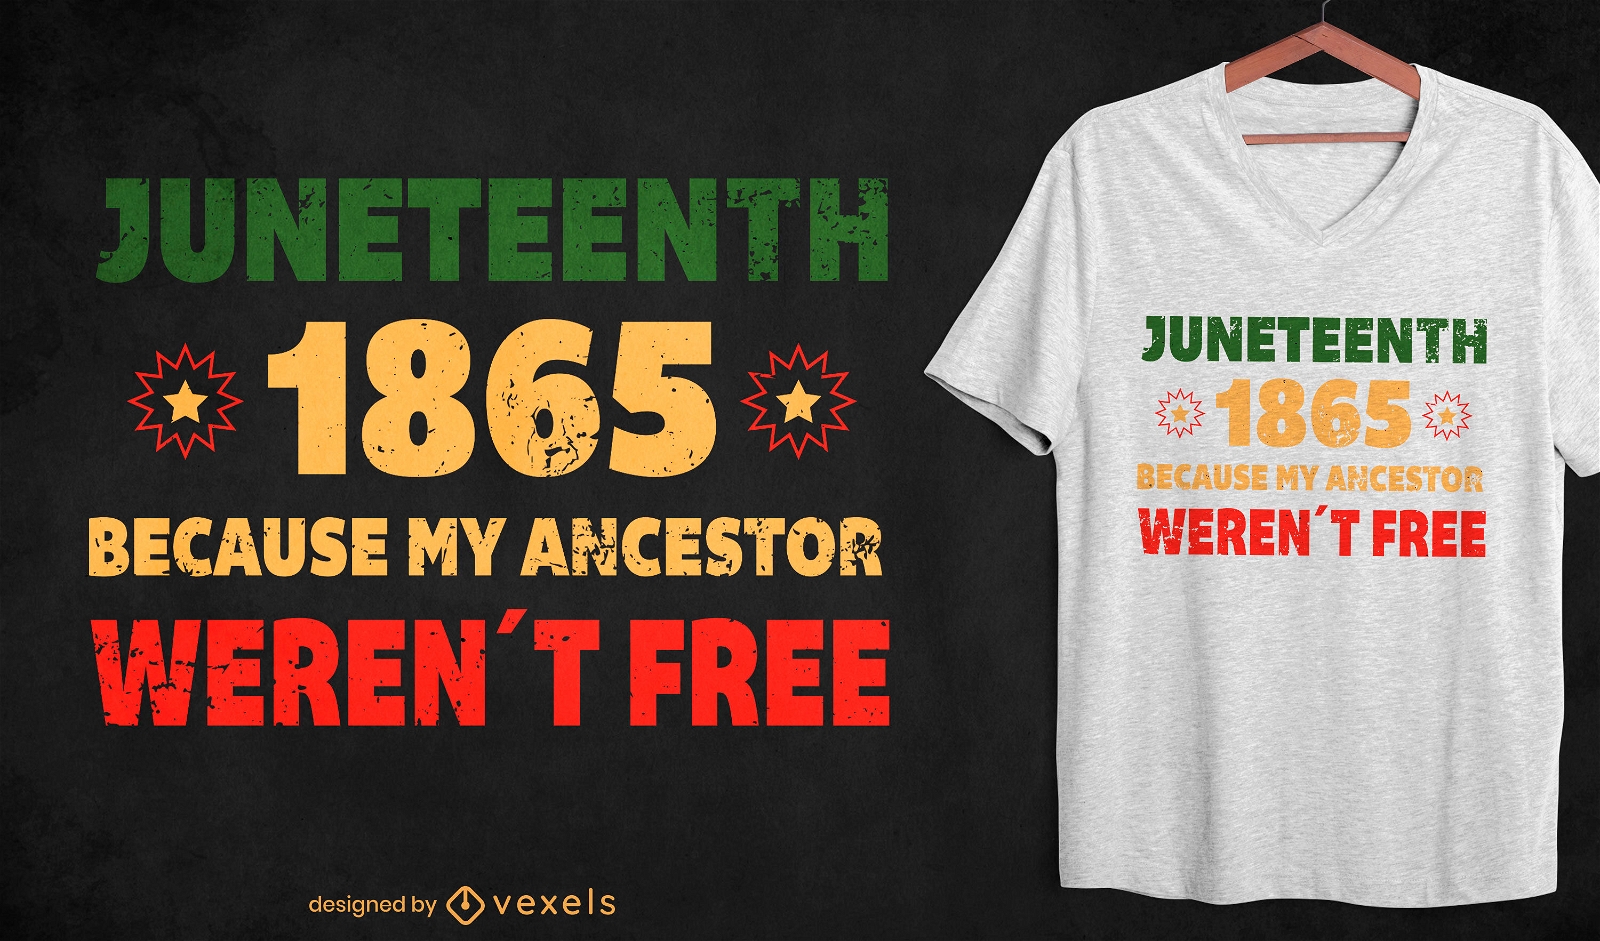 Juneteenth 1865 t-shirt design